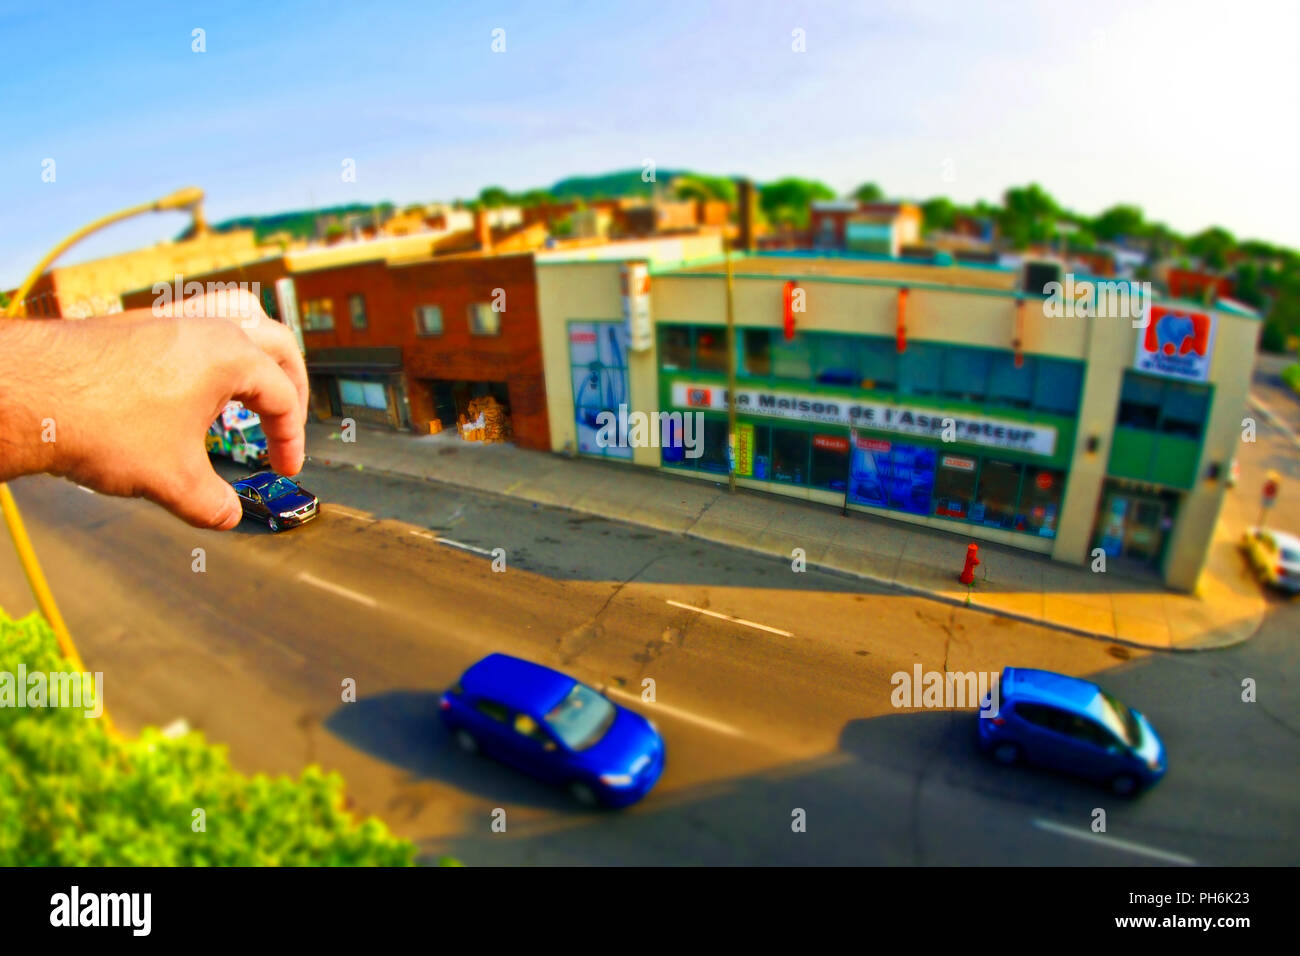 Straße Foto Hände Gottes takin ein blaues Auto diorama Spezialeffekte Perspektive Schuß Spaß Spielzeug lustiges Foto miniatur Wirkungen Wirkung Stockfoto